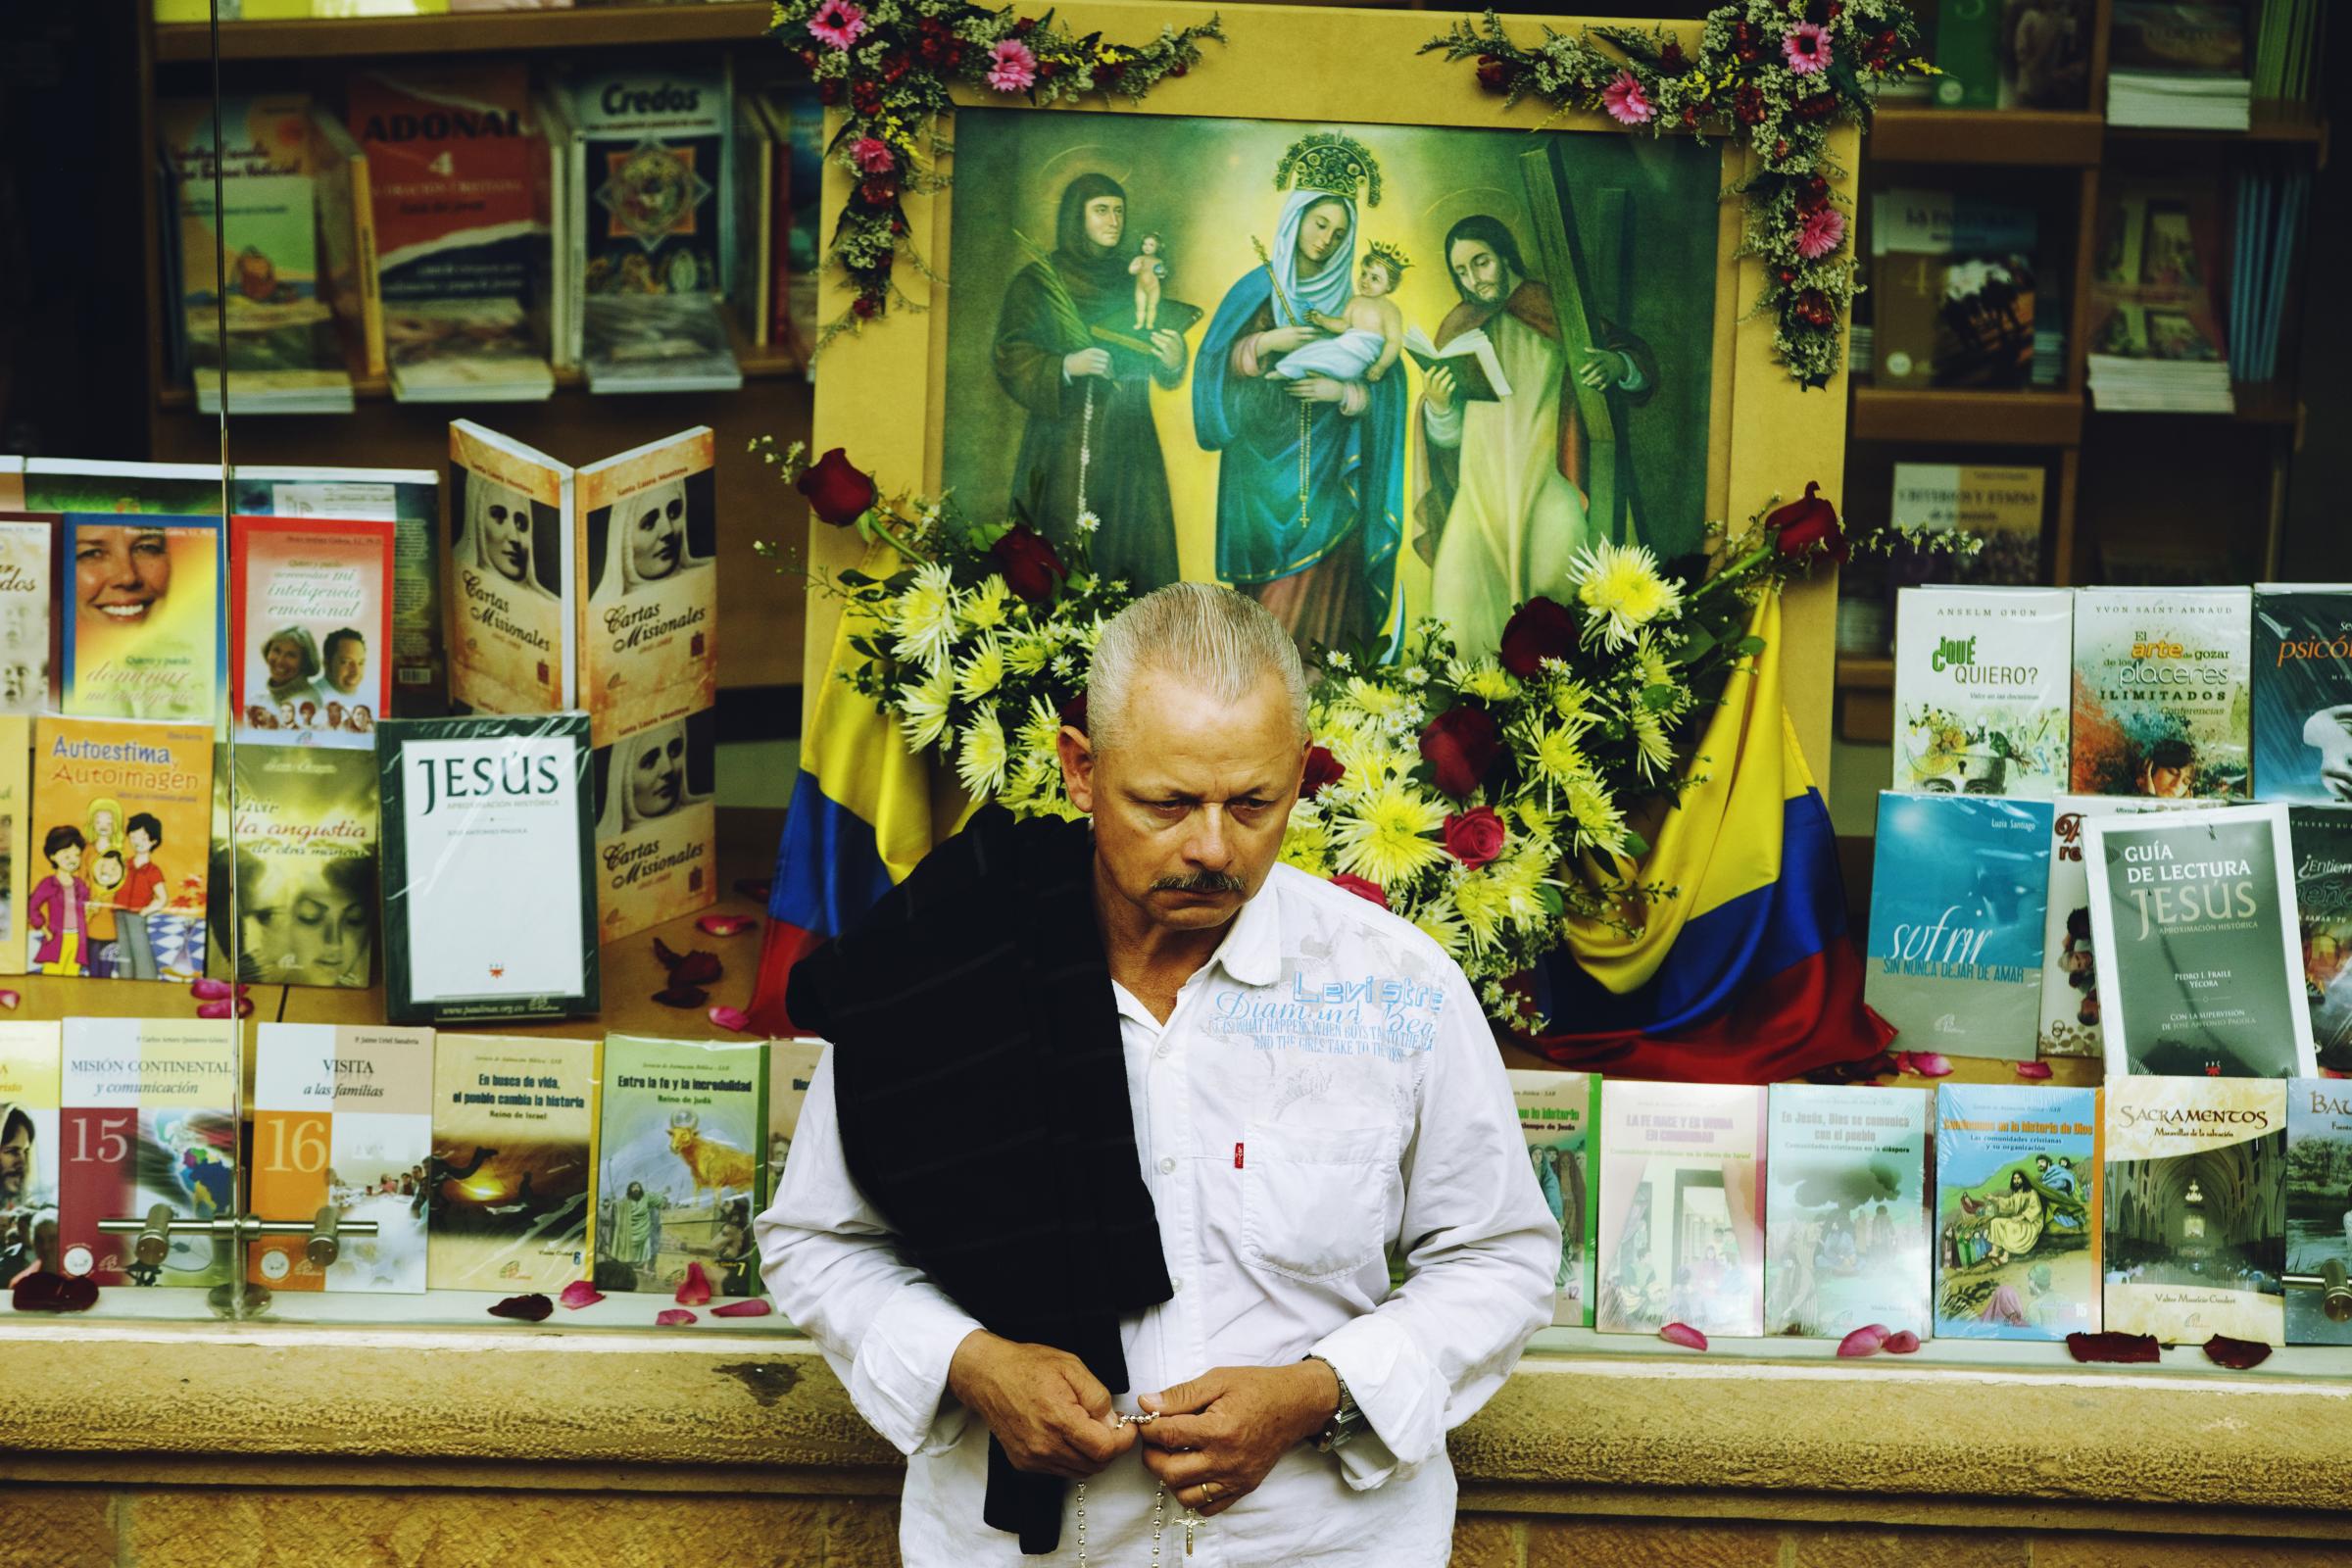 Boyacá - A man prays during a religious parade in...